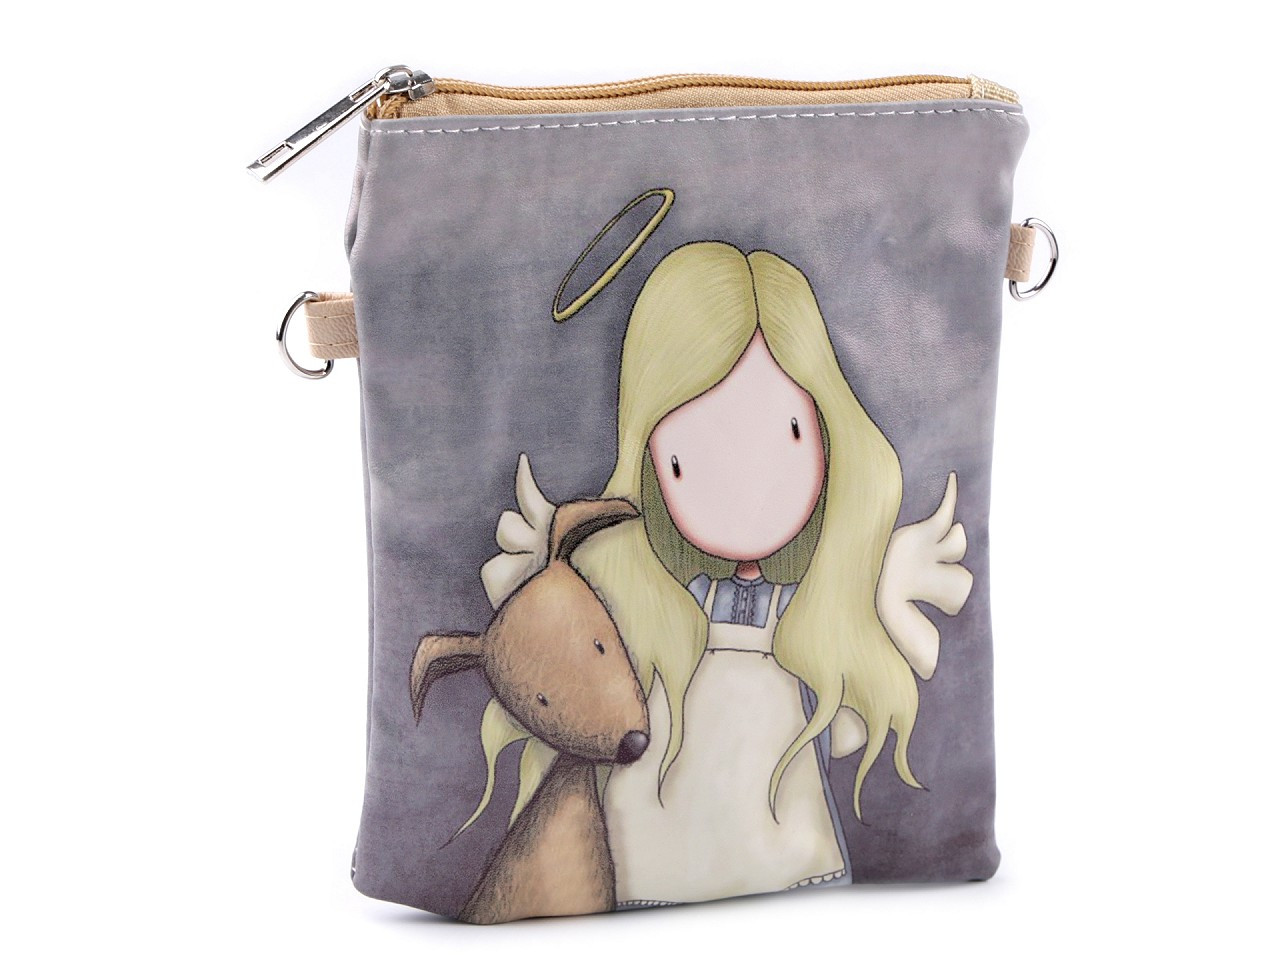 Dívčí kabelka 15x18,5 cm s potiskem, barva 14 šedá